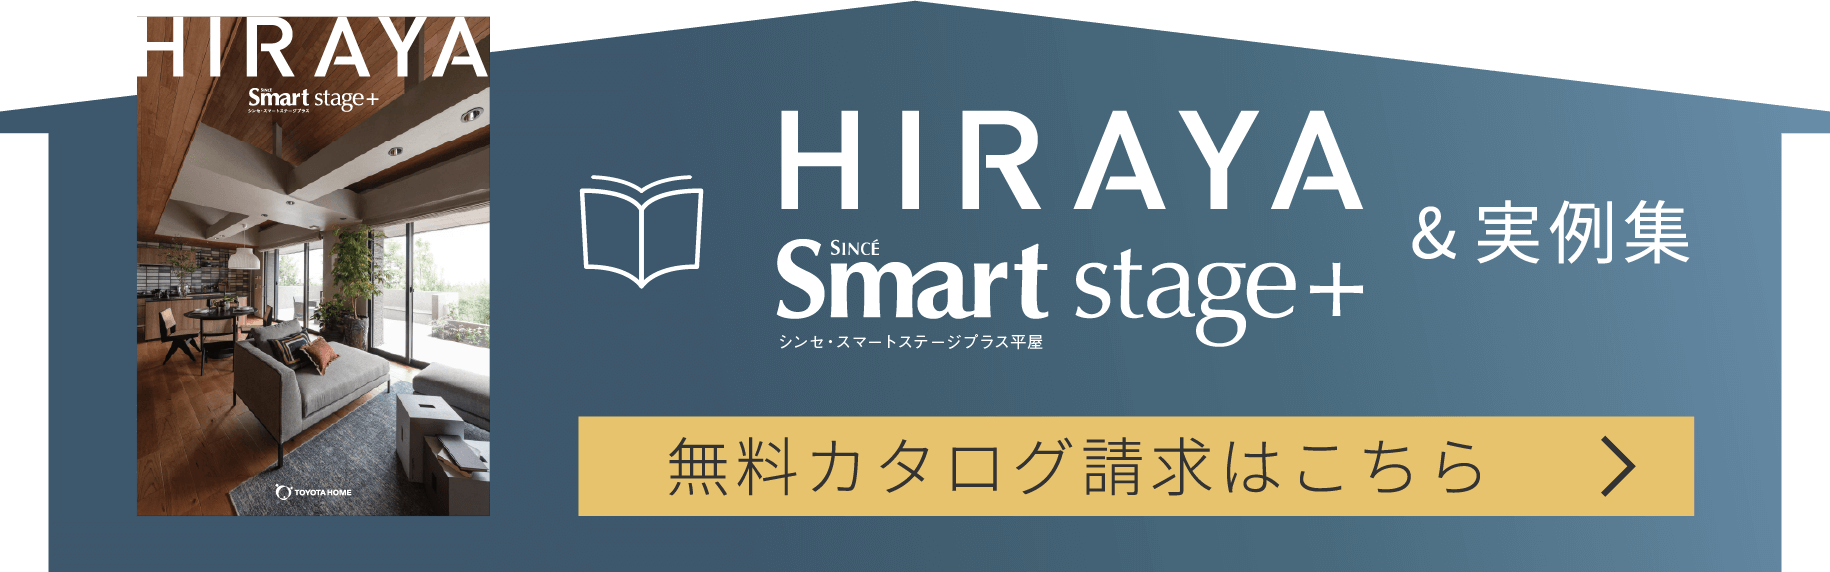 HIRAYA Smart stage+ ＆実例集 無料カタログ請求はこちら